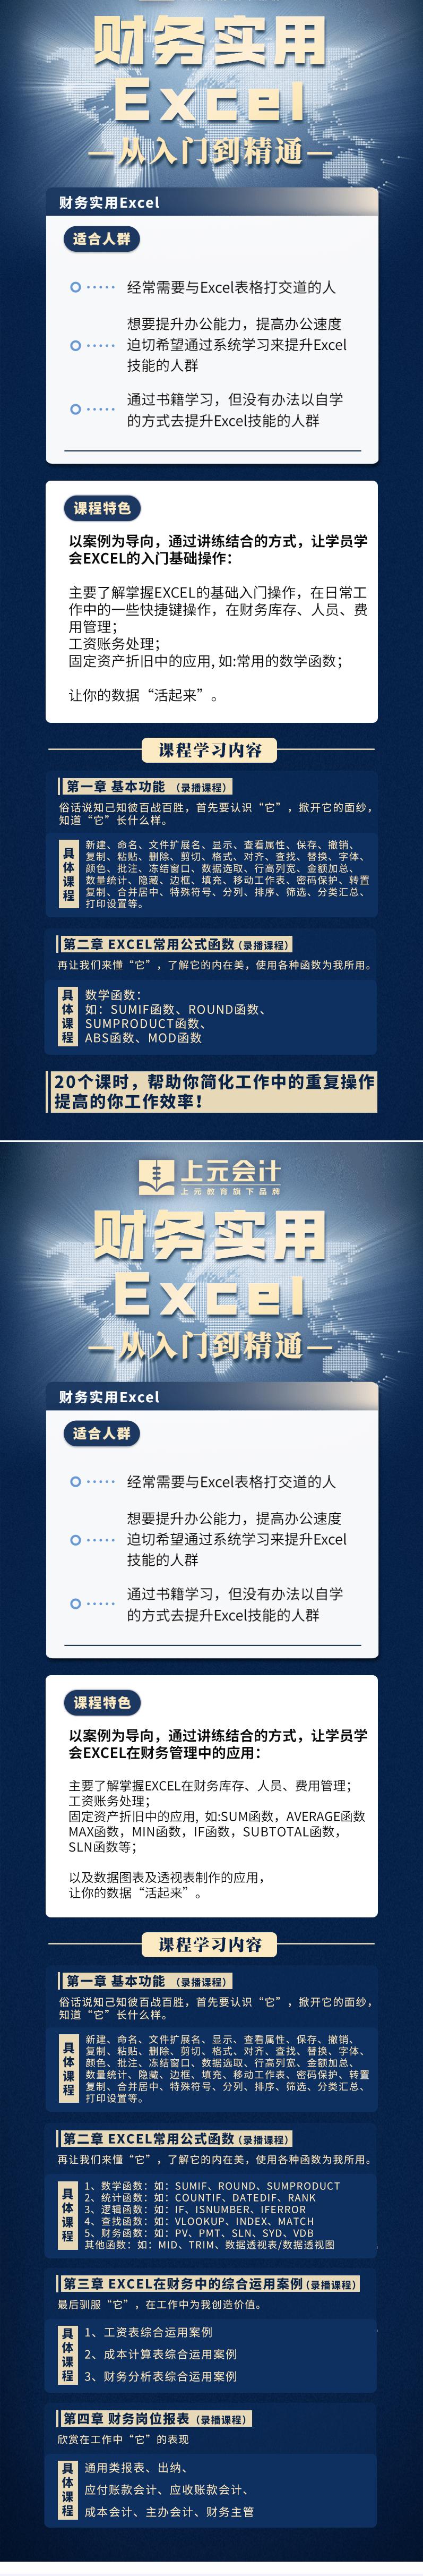 杭州周末制财务实用Excel培训